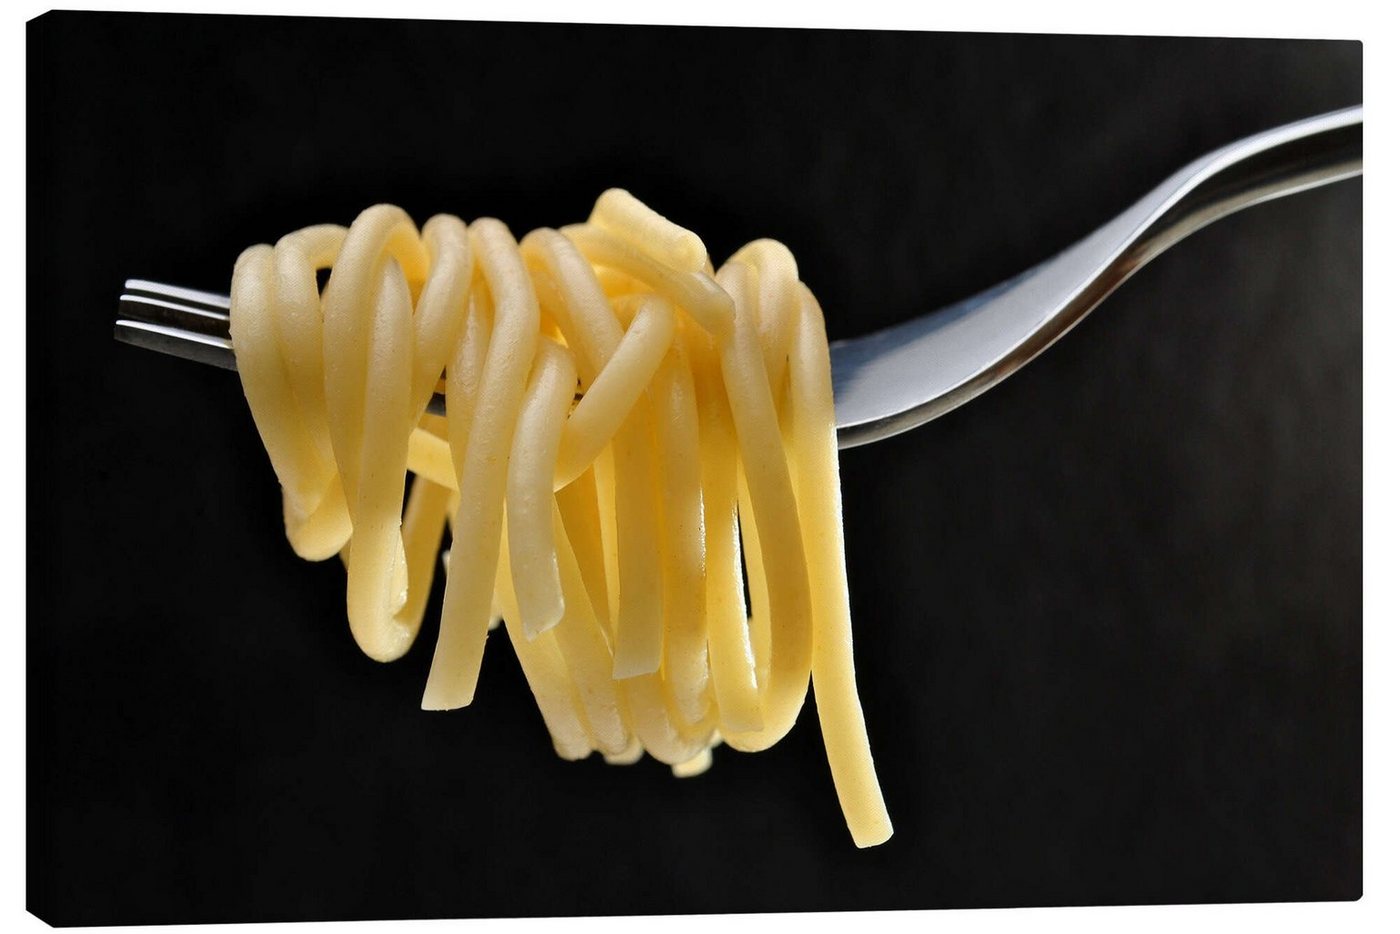 Posterlounge Leinwandbild Editors Choice, Spaghetti auf einer Gabel, Fotografie von Posterlounge